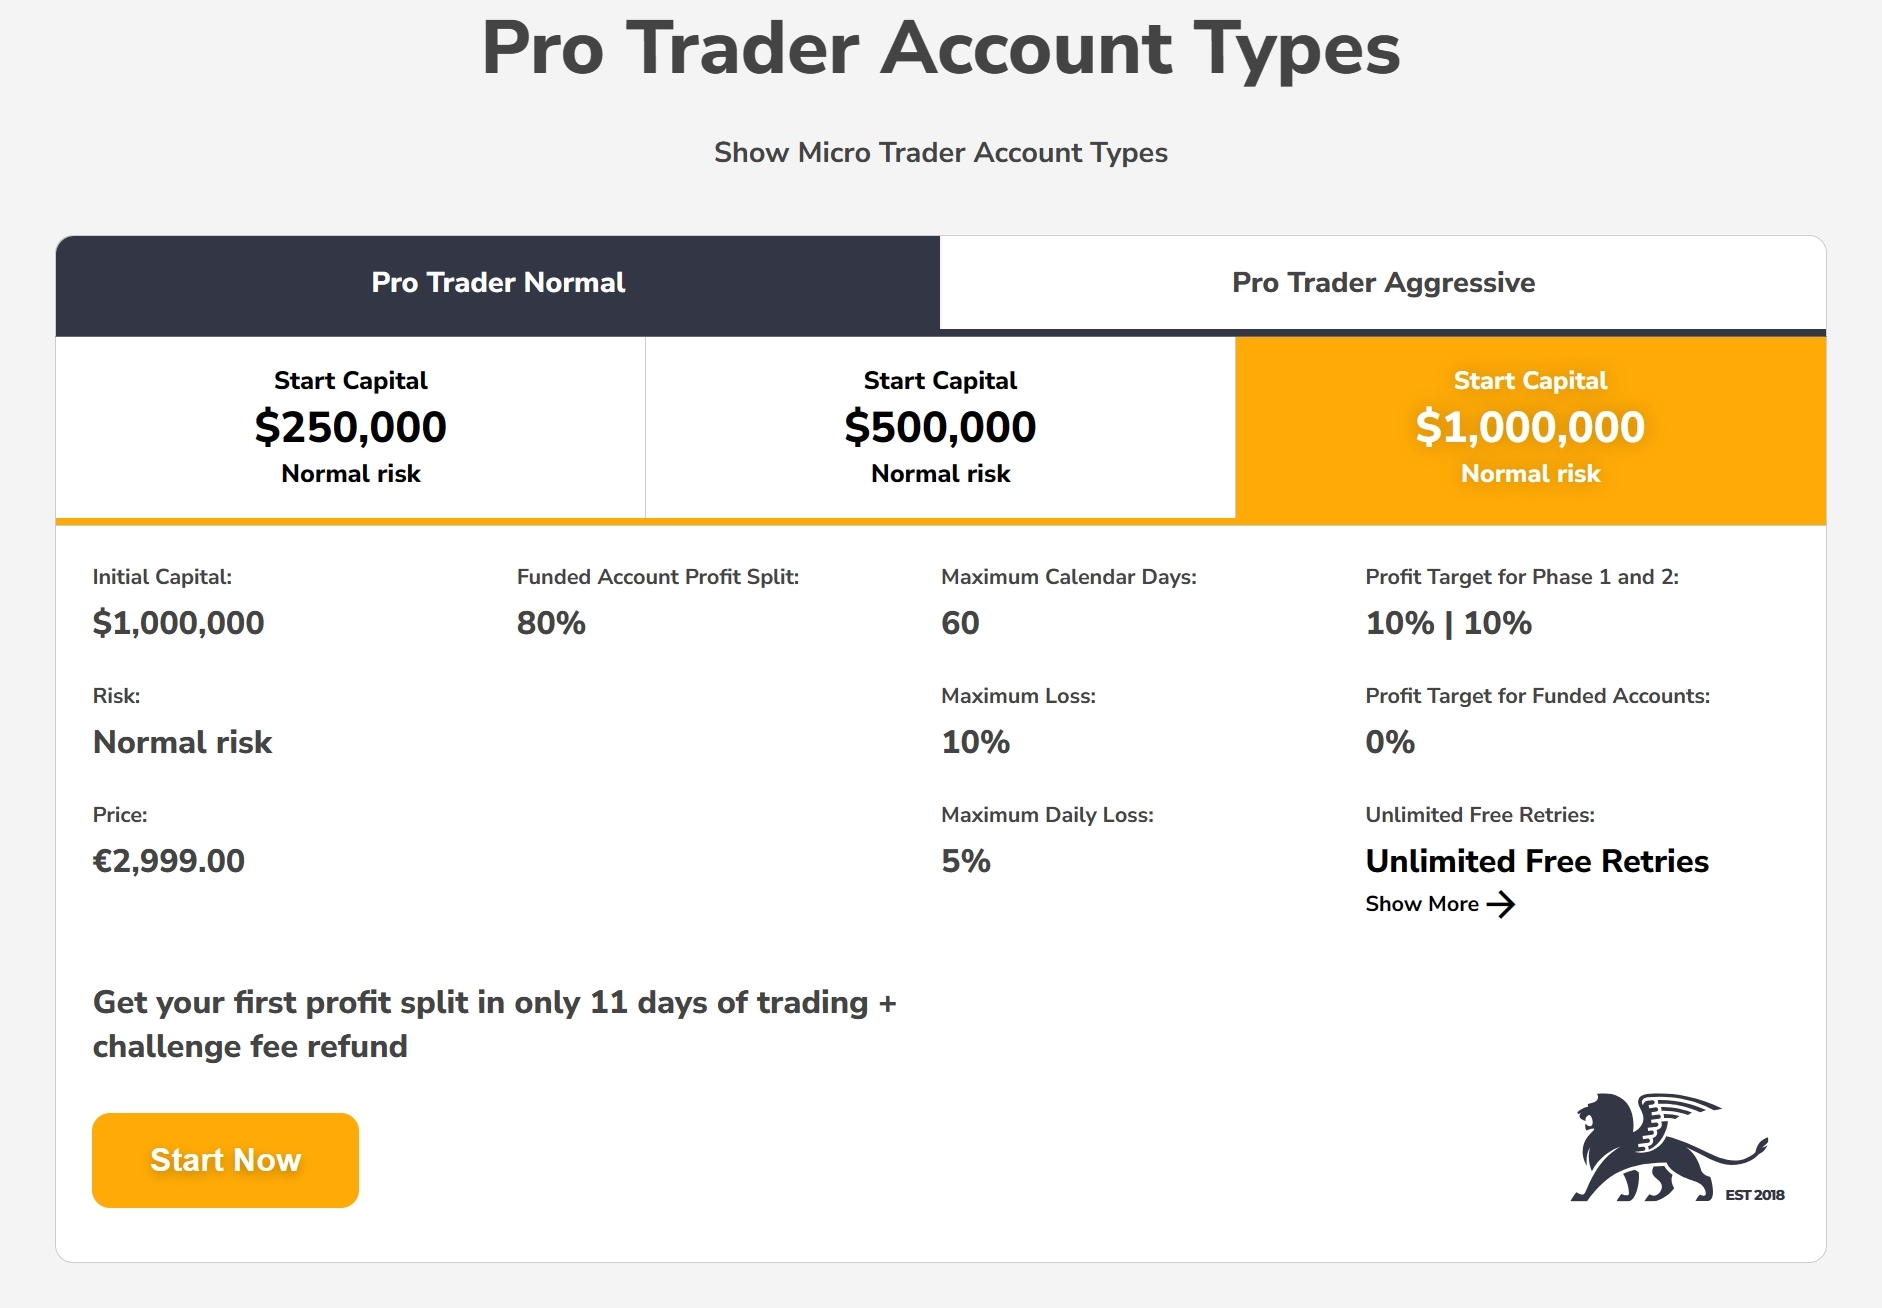 Fidelcrest pro trader accounts comparison